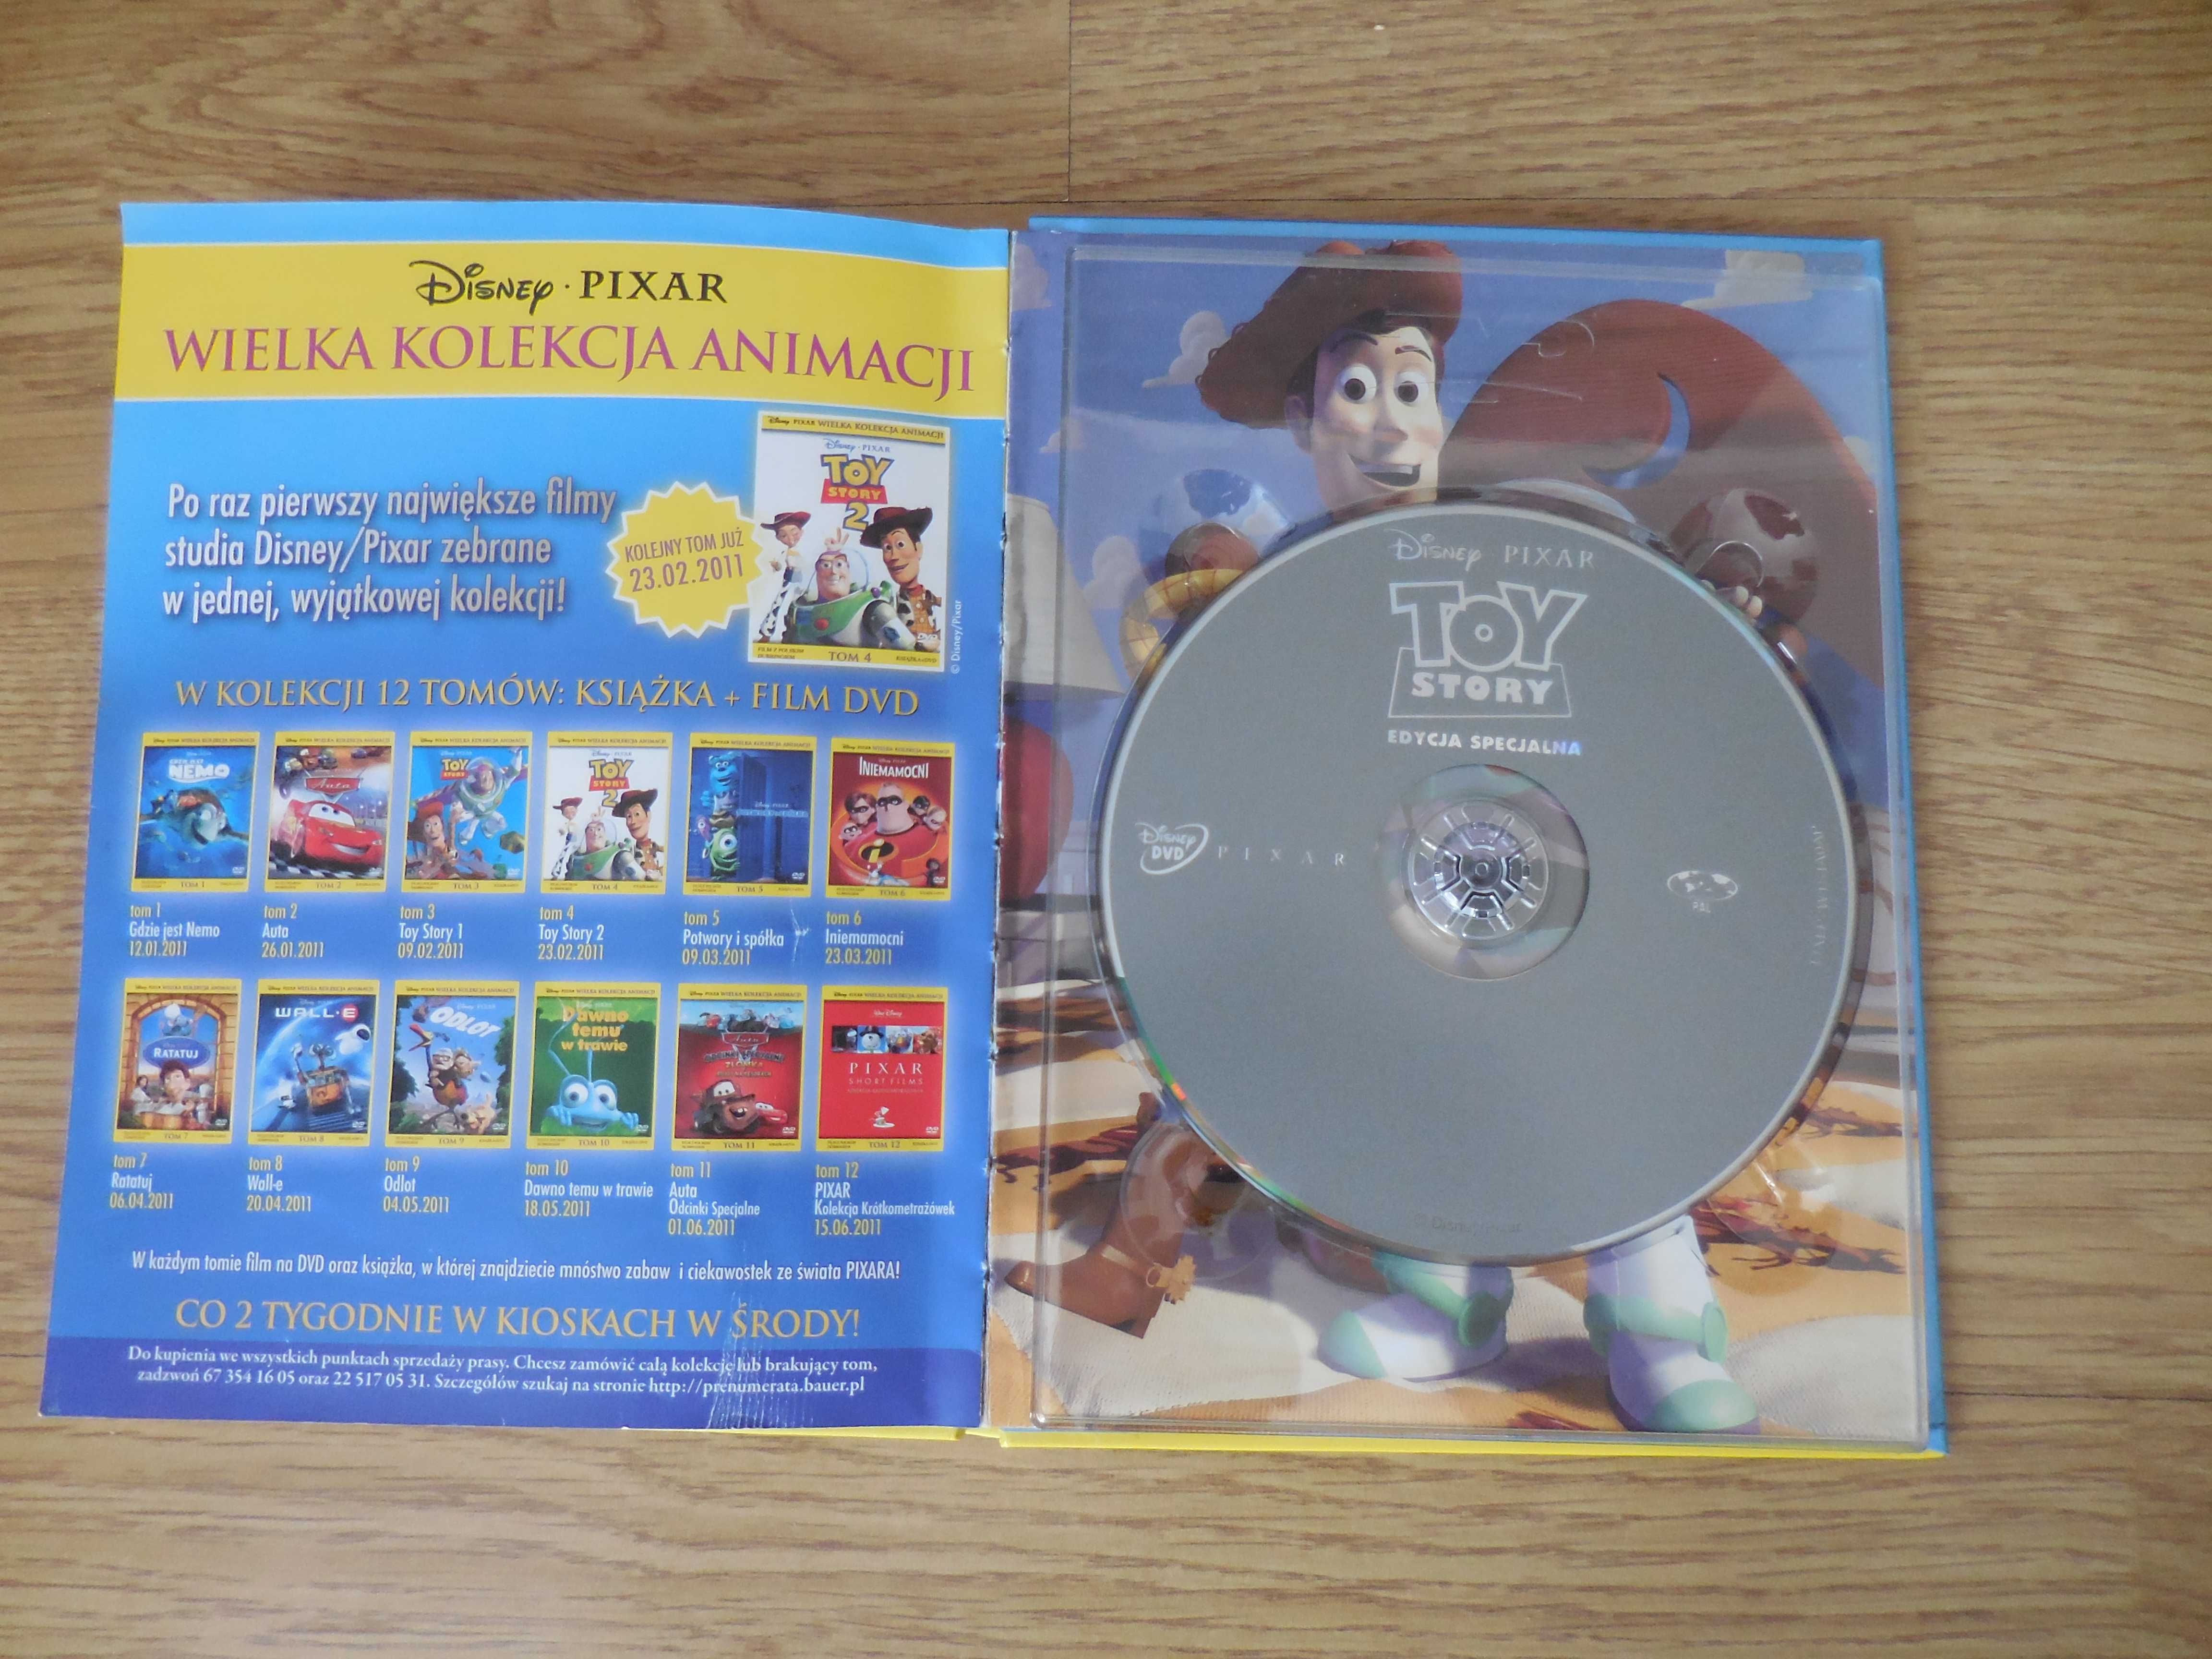 BAJKI 'Toy Story' - Disney